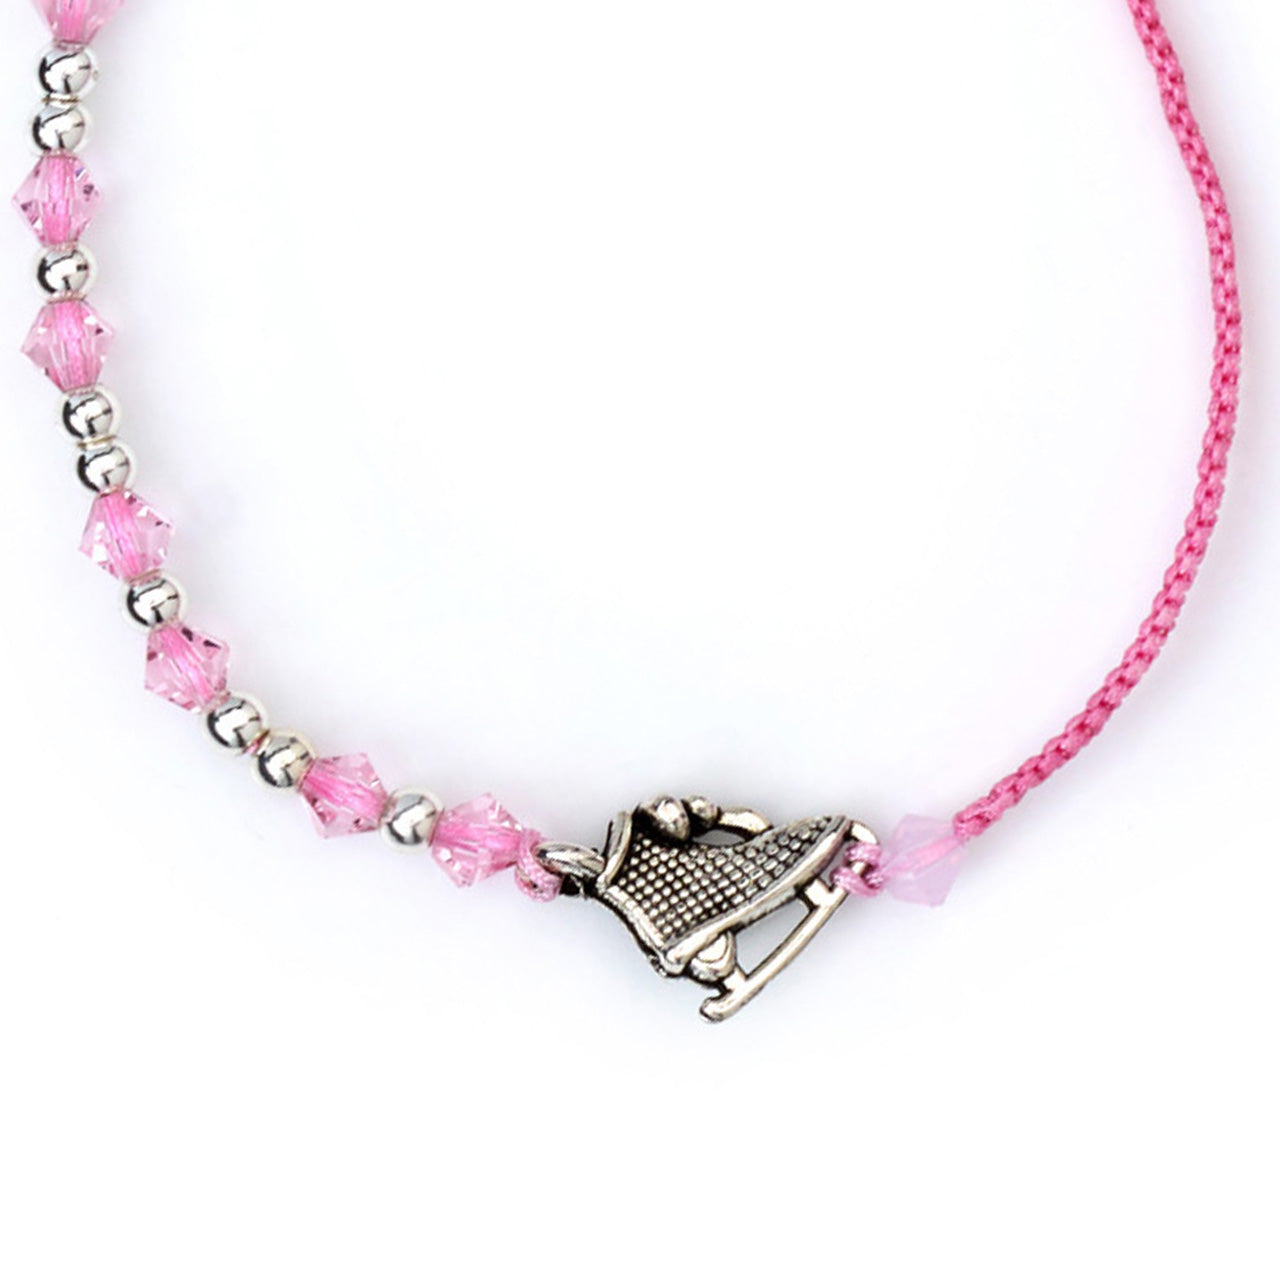 Bracelet ‘Colourful Skate’ – Pink